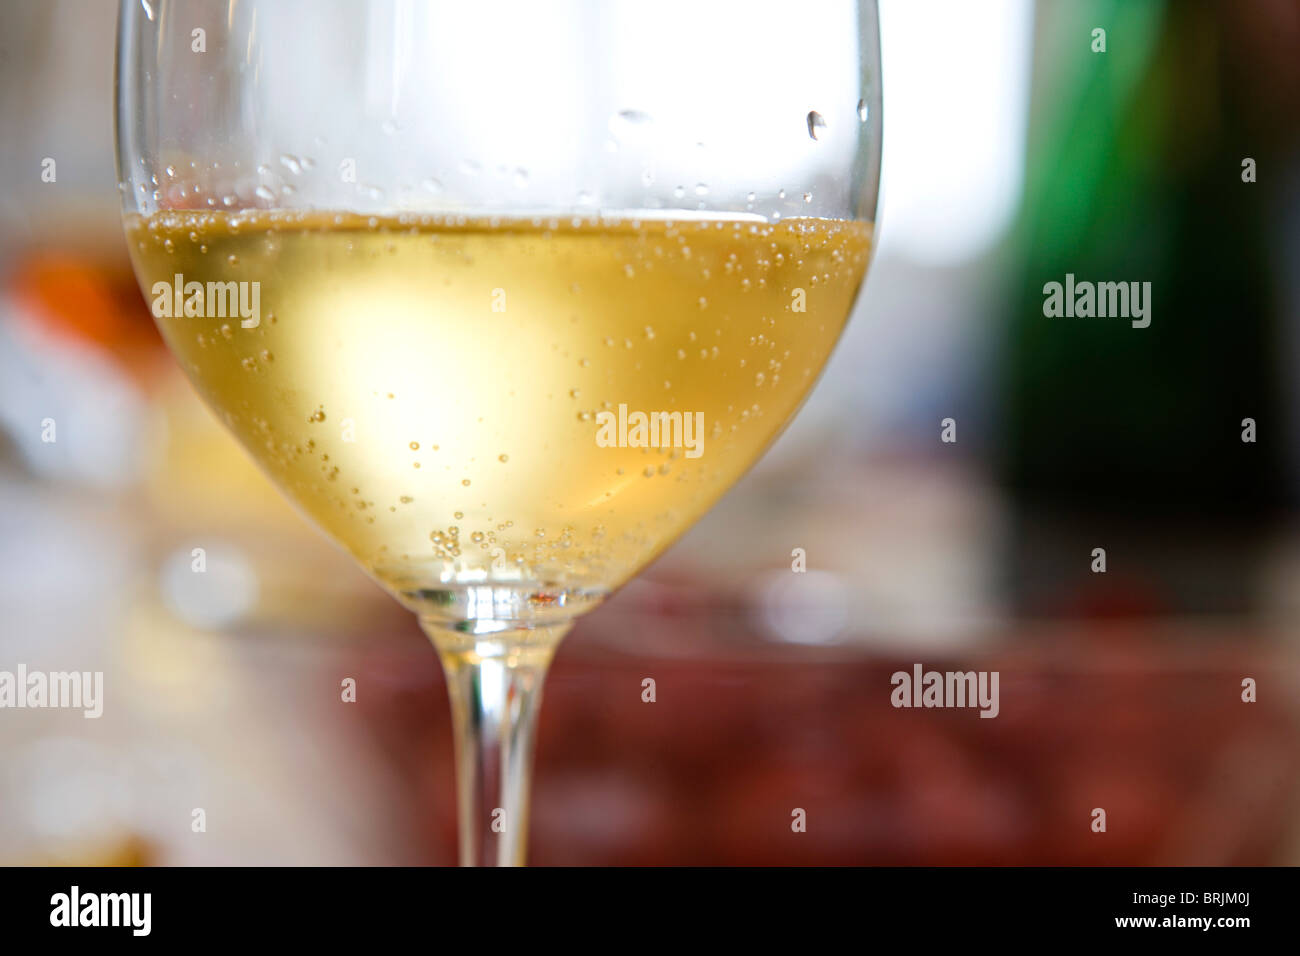 Tröpfchen Kondenswasser auf Glas gekühlten Weißwein Stockfoto